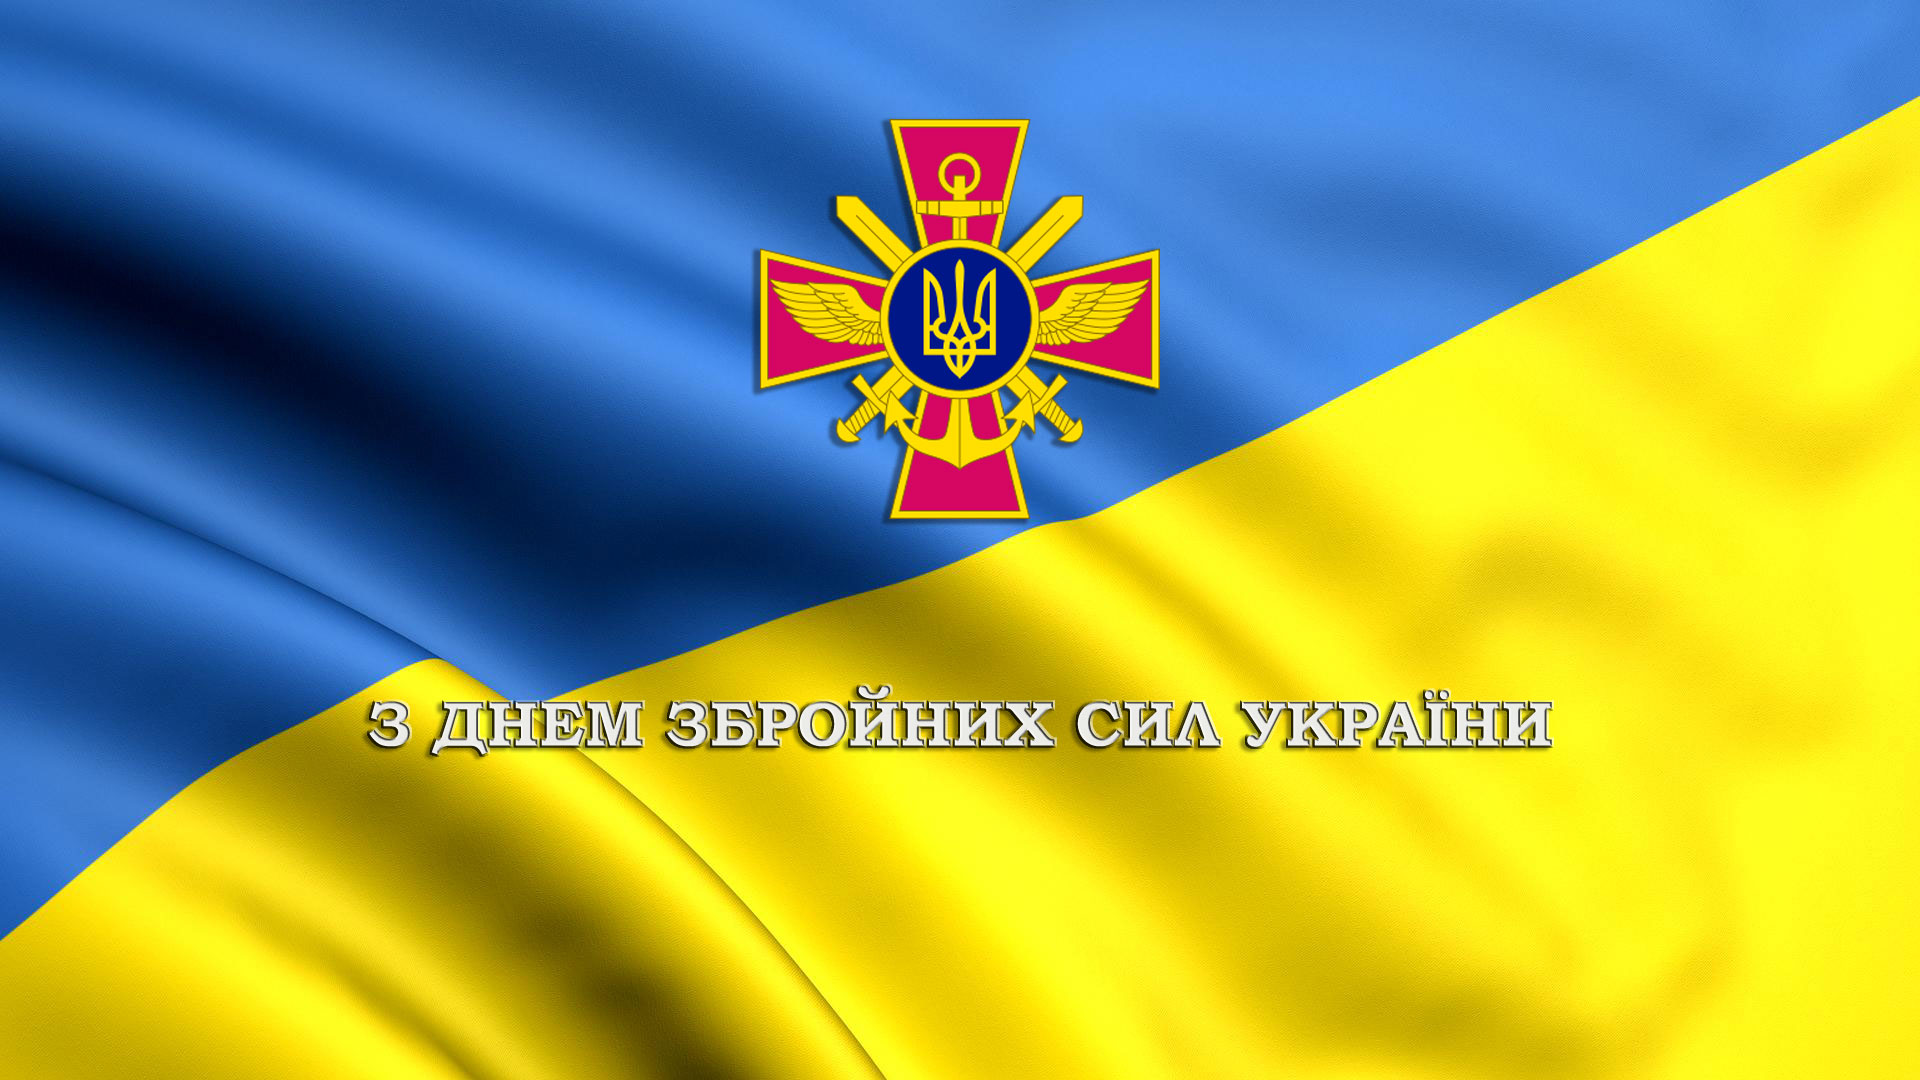 З днем збройних сил України